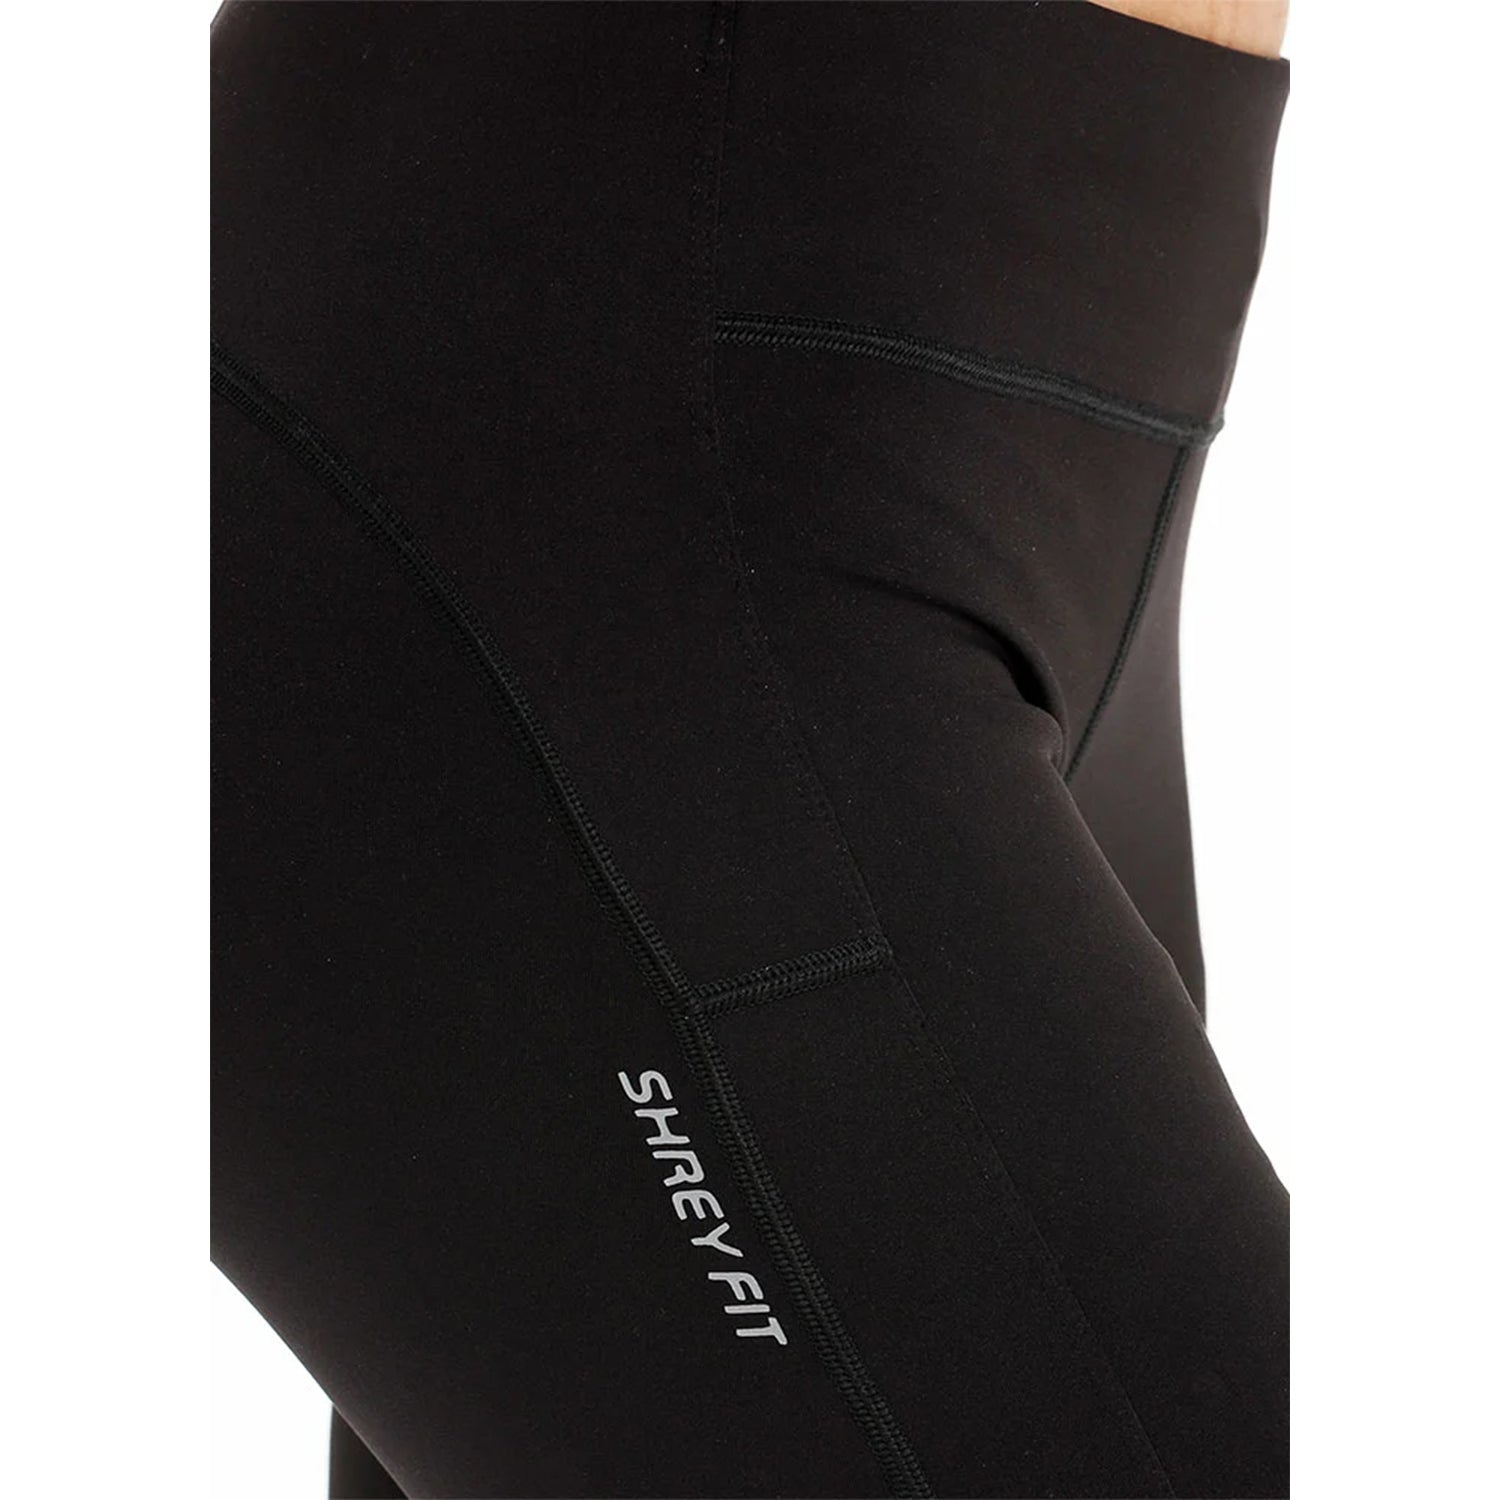 Shrey Auburn Legging for Women - Best Price online Prokicksports.com